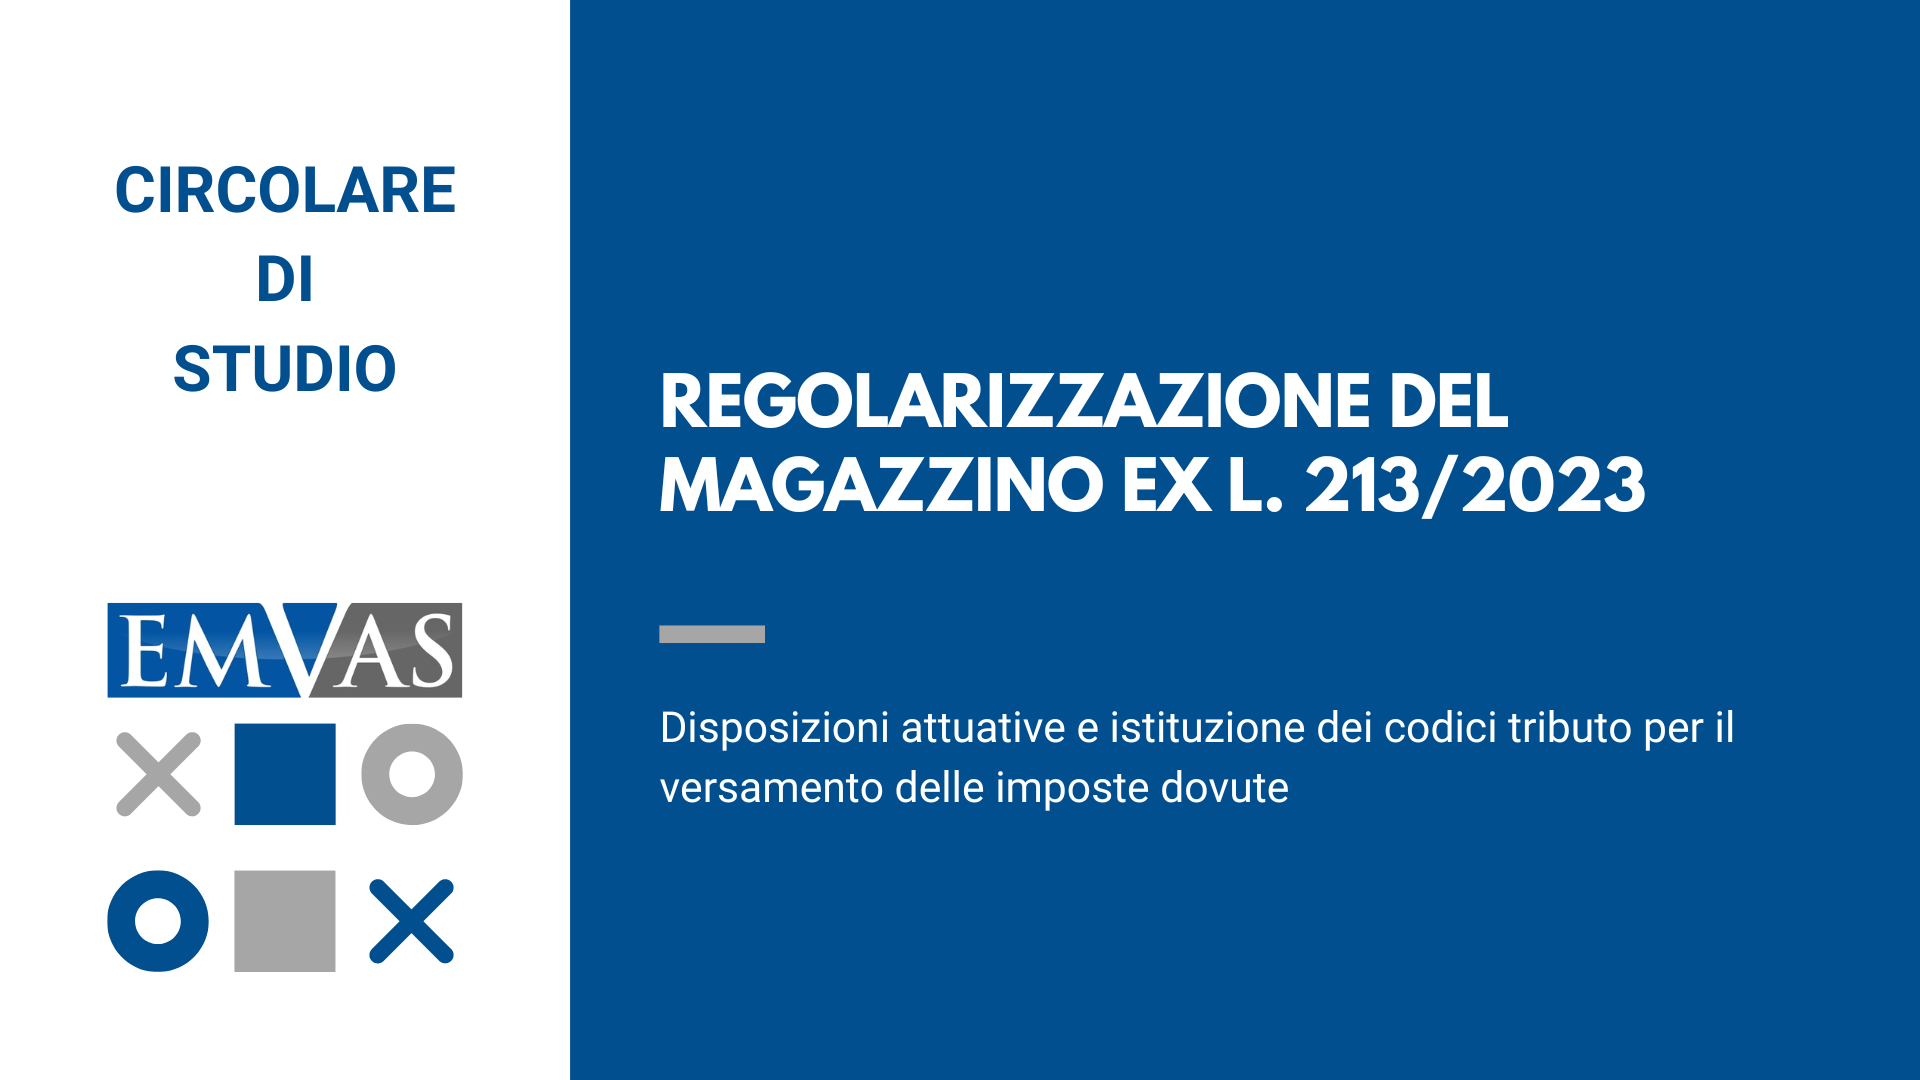 REGOLARIZZAZIONE DEL MAGAZZINO EX L. 213/2023